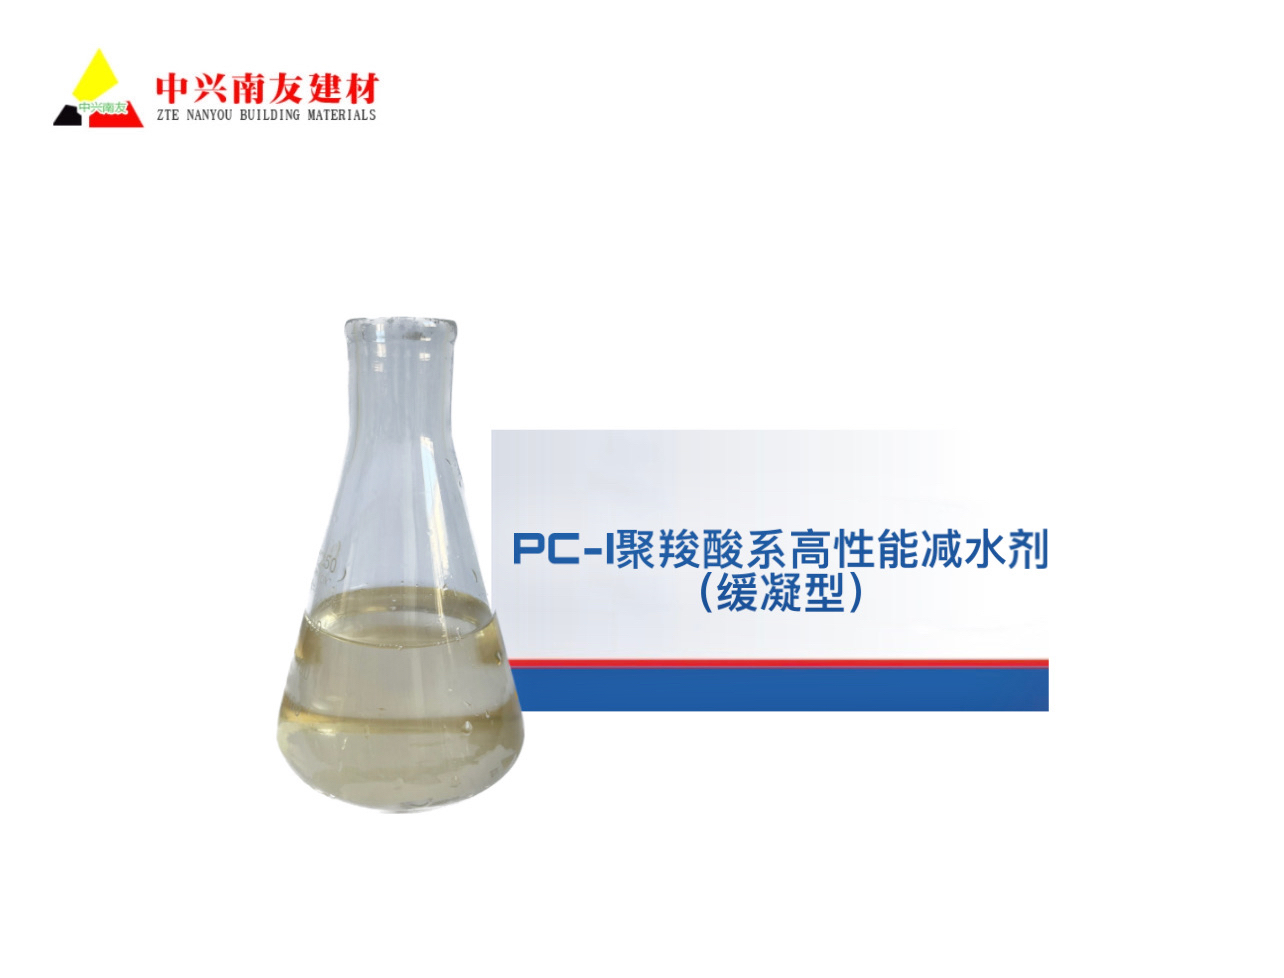 PC-I聚羧酸系高性能减水剂（缓凝型）